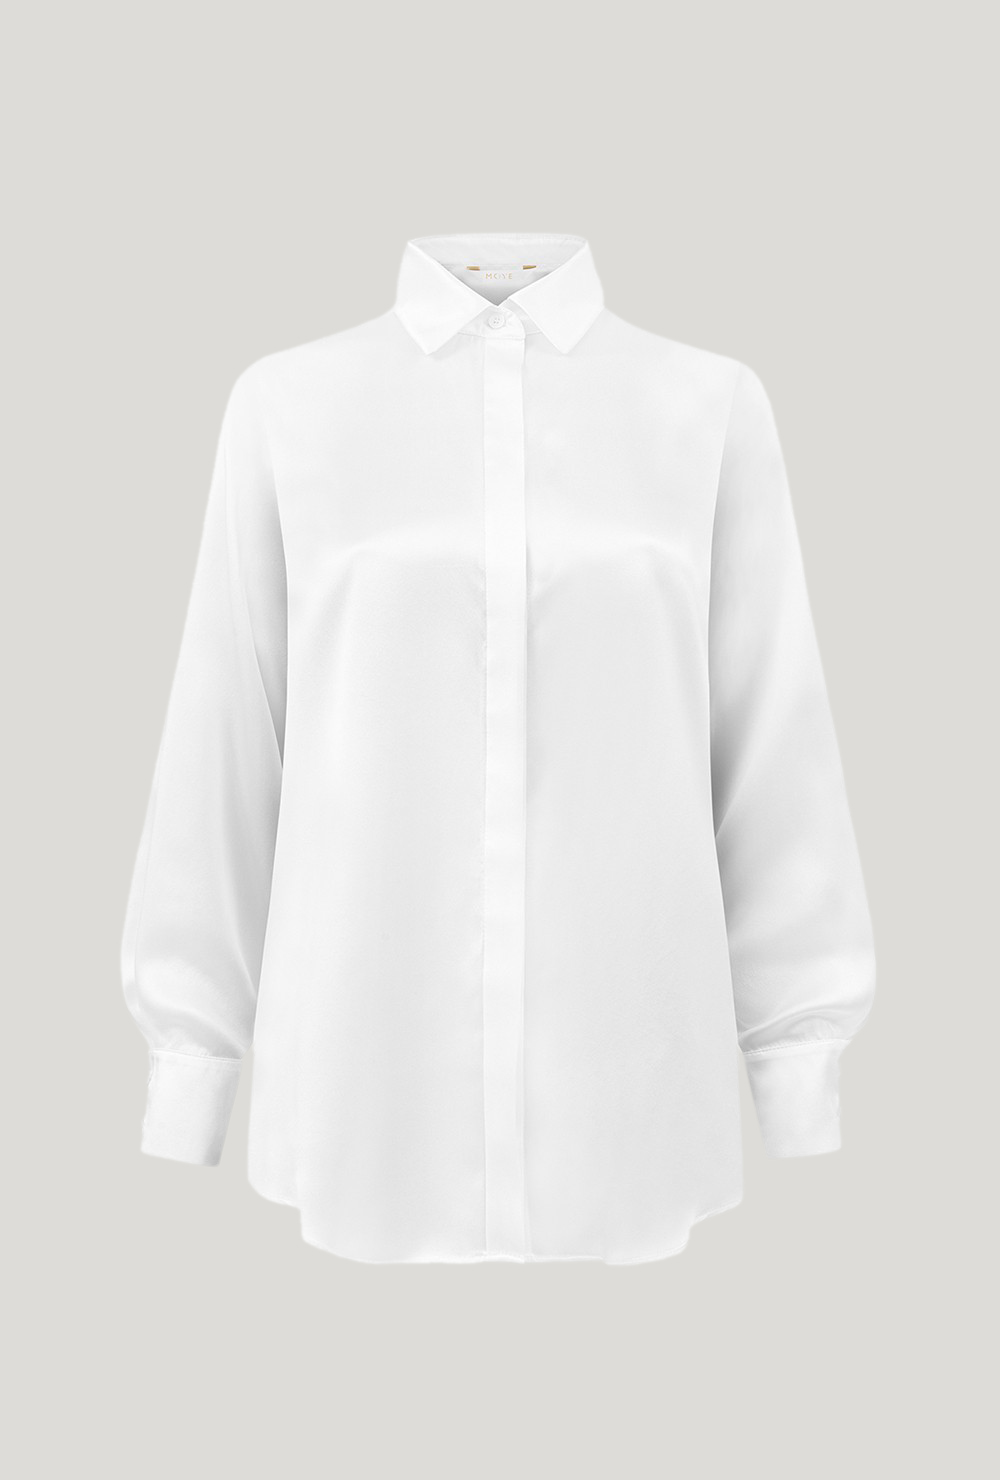 Classic white silk satin shirt
Klasyczna biała koszula z satyny jedwabnej